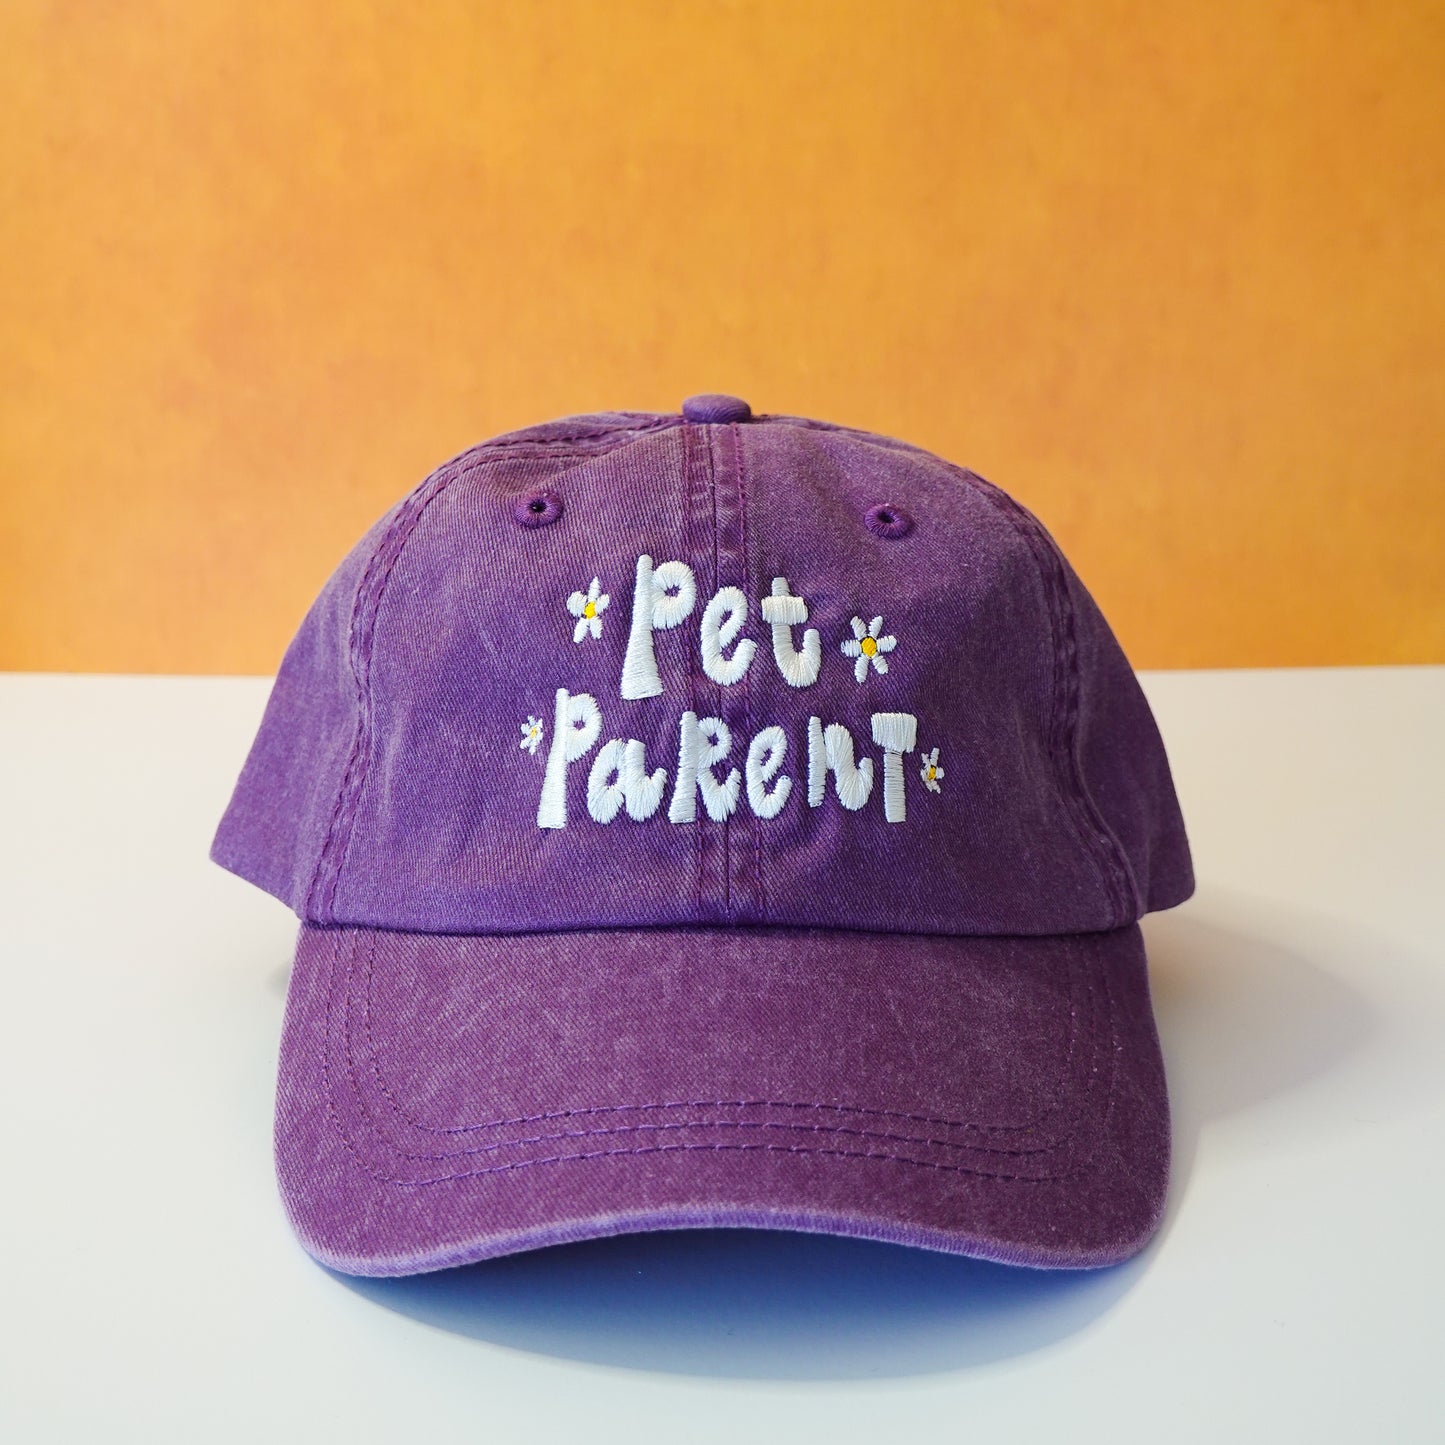 Pet Parent hat